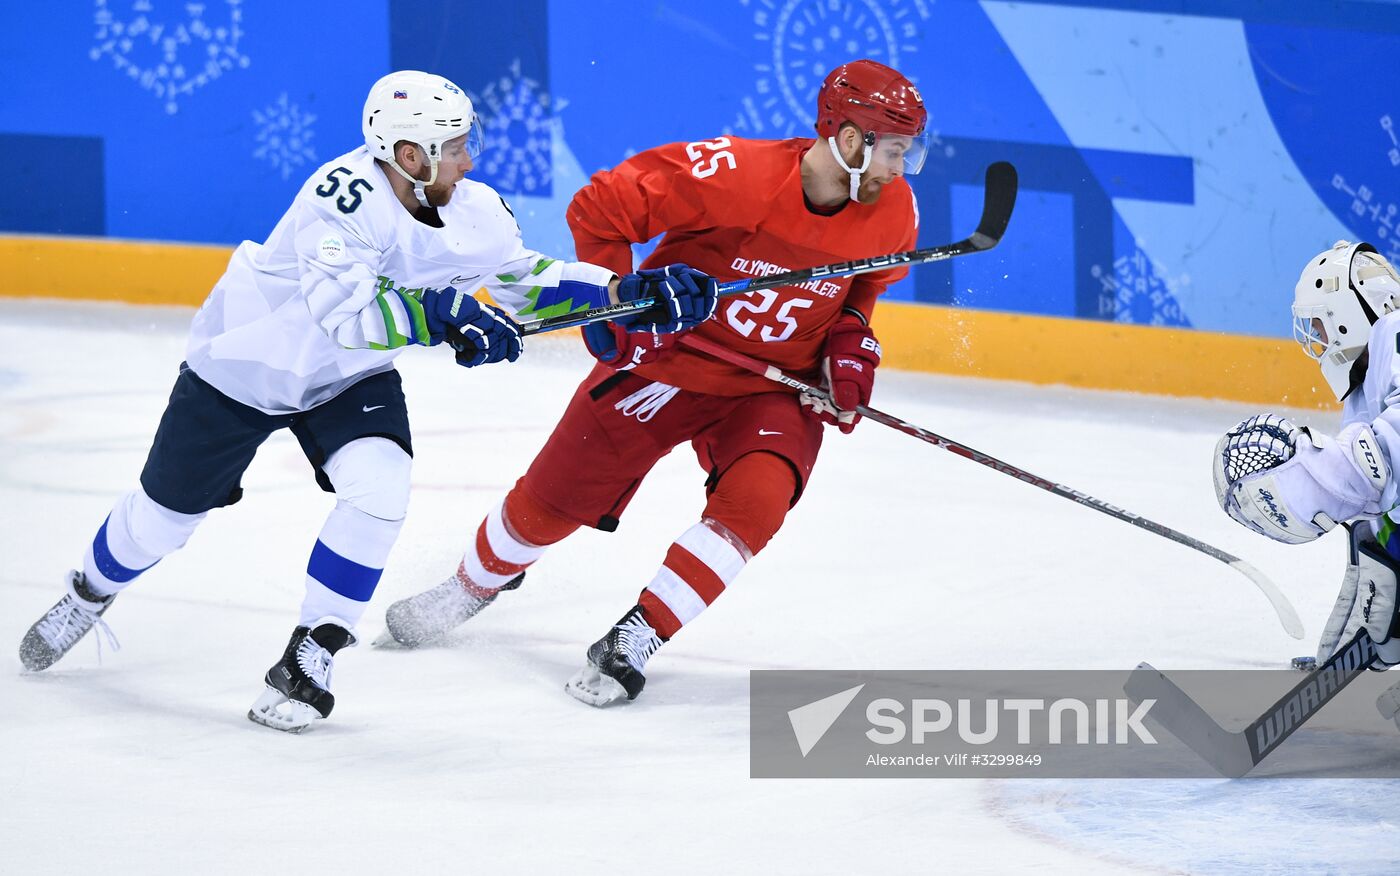 2018 Winter Olympics. Ice hockey. Men. Russia vs. Slovenia